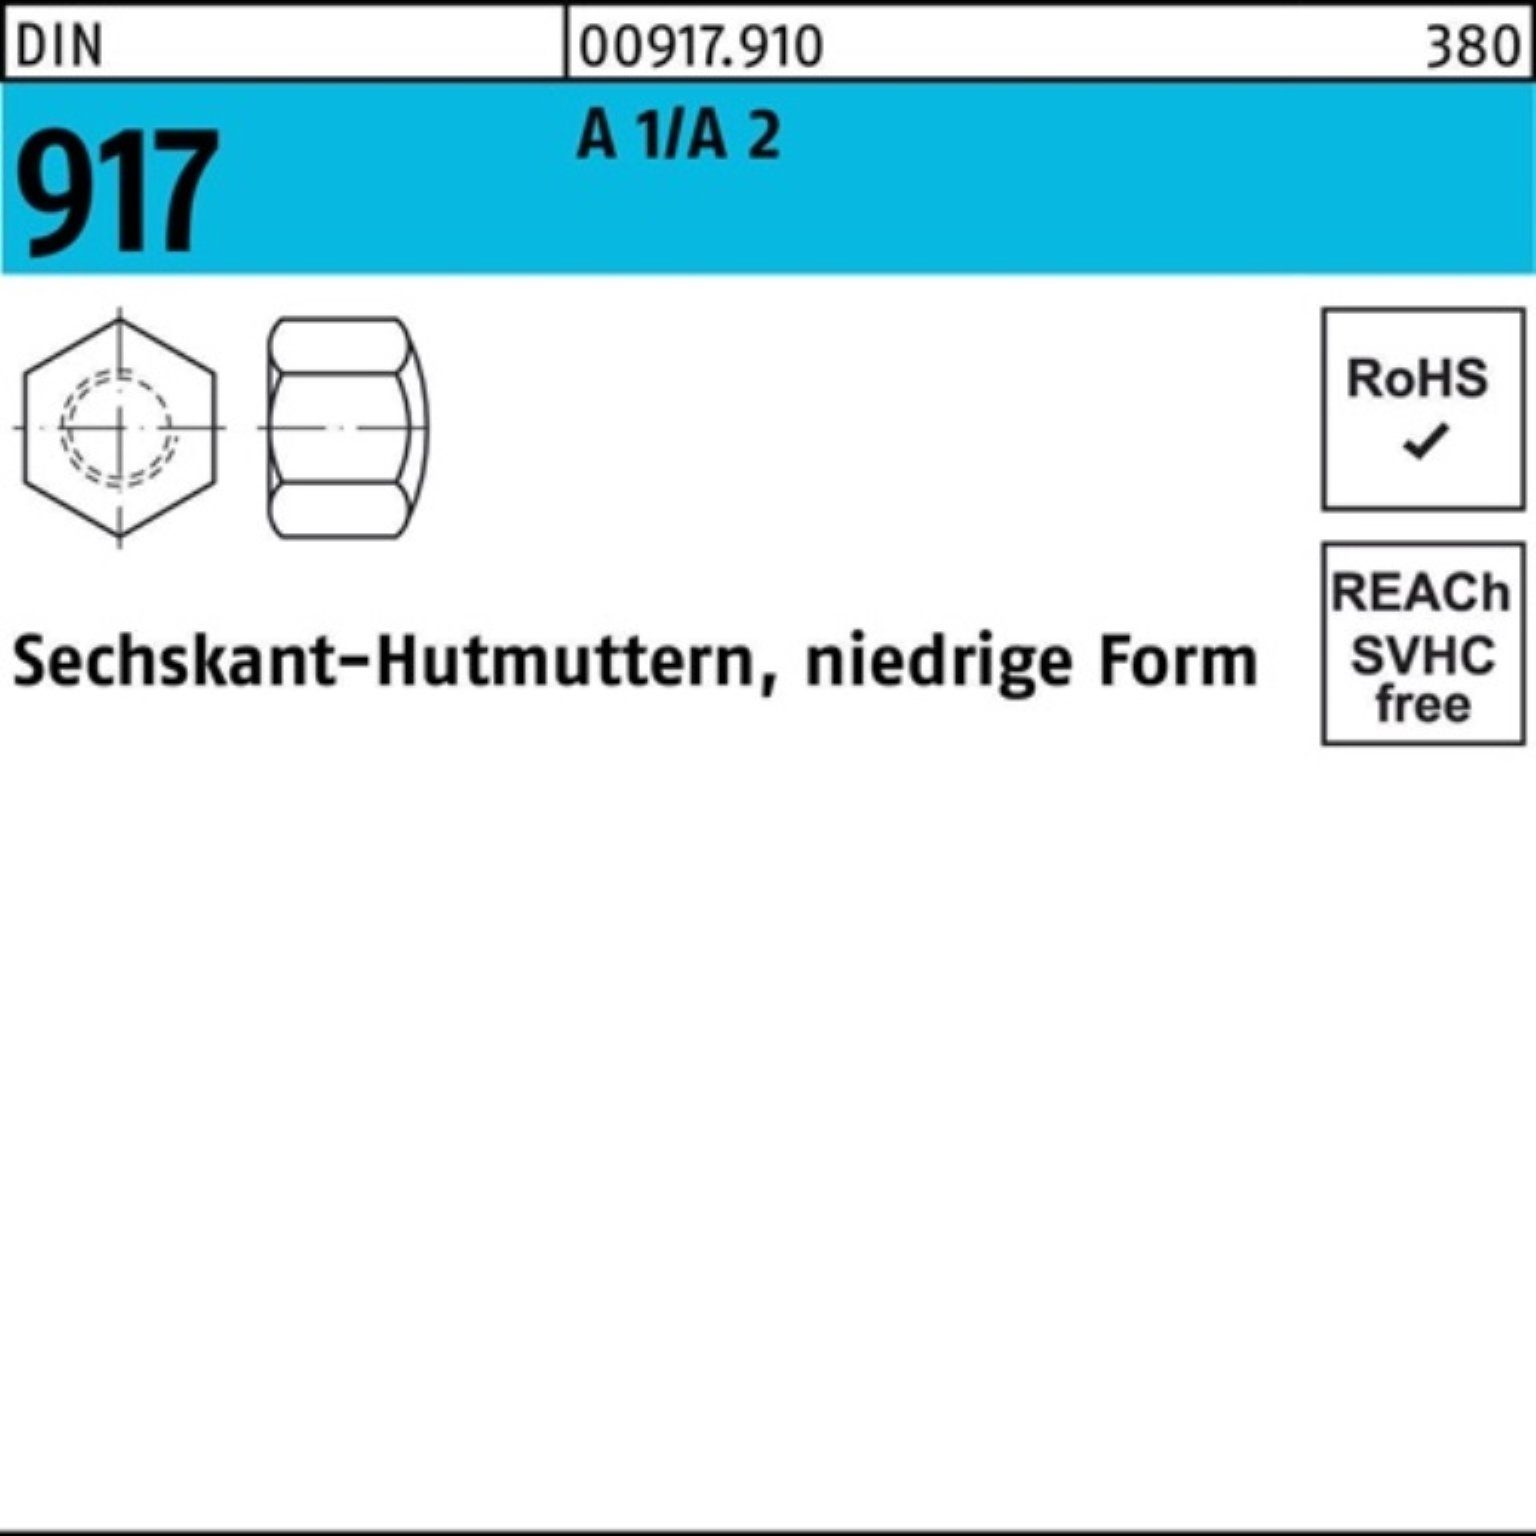 50 FormM8 Reyher Sechskanthutmutter 2 100er A niedrige 917 Pack 1/A Stüc Hutmutter DIN